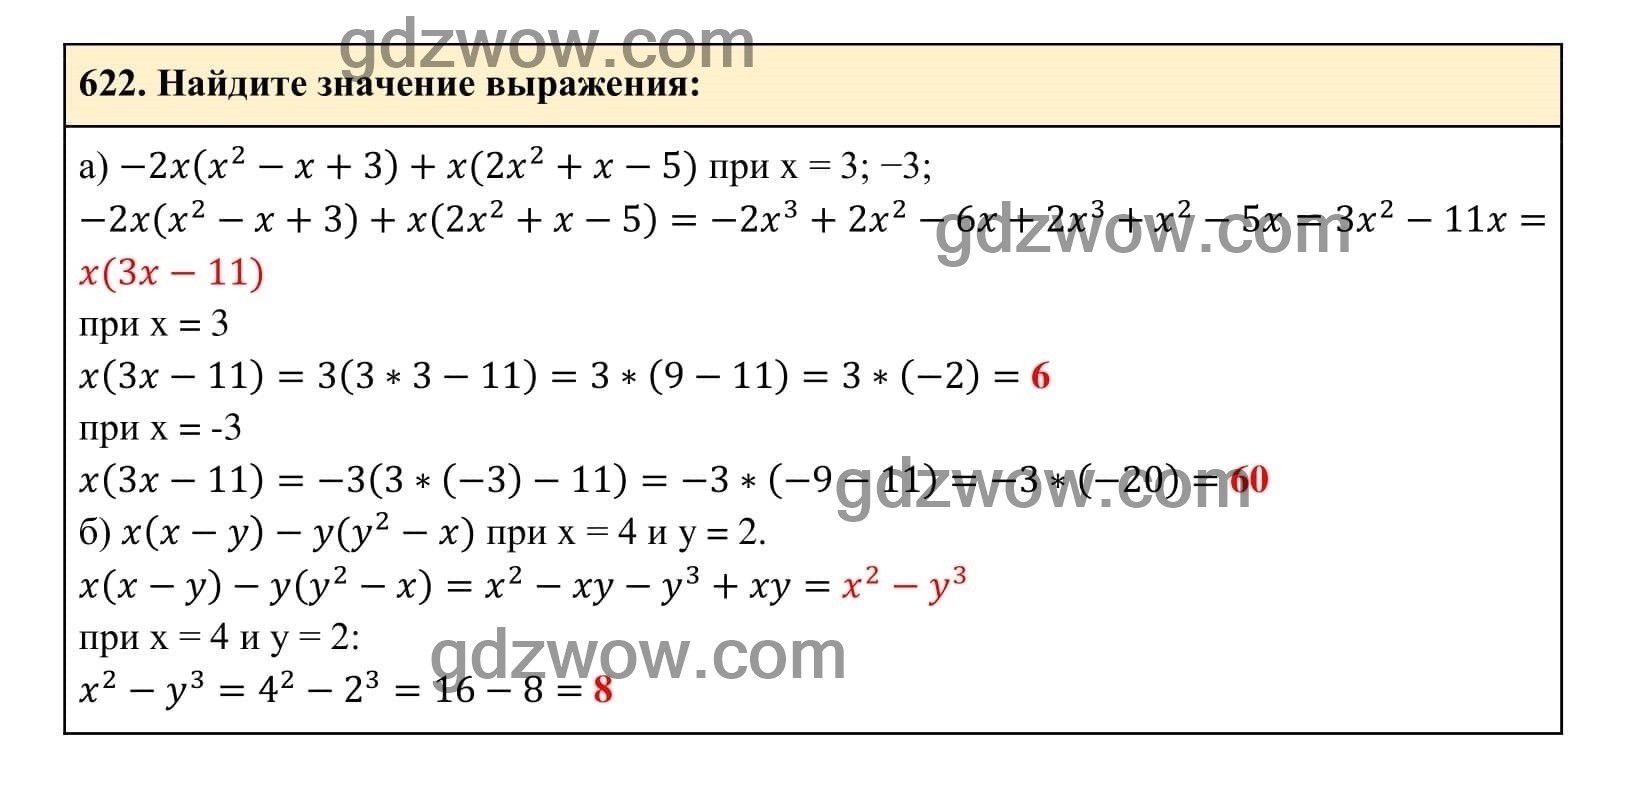 Упражнение 622 - ГДЗ по Алгебре 7 класс Учебник Макарычев (решебник) - GDZwow